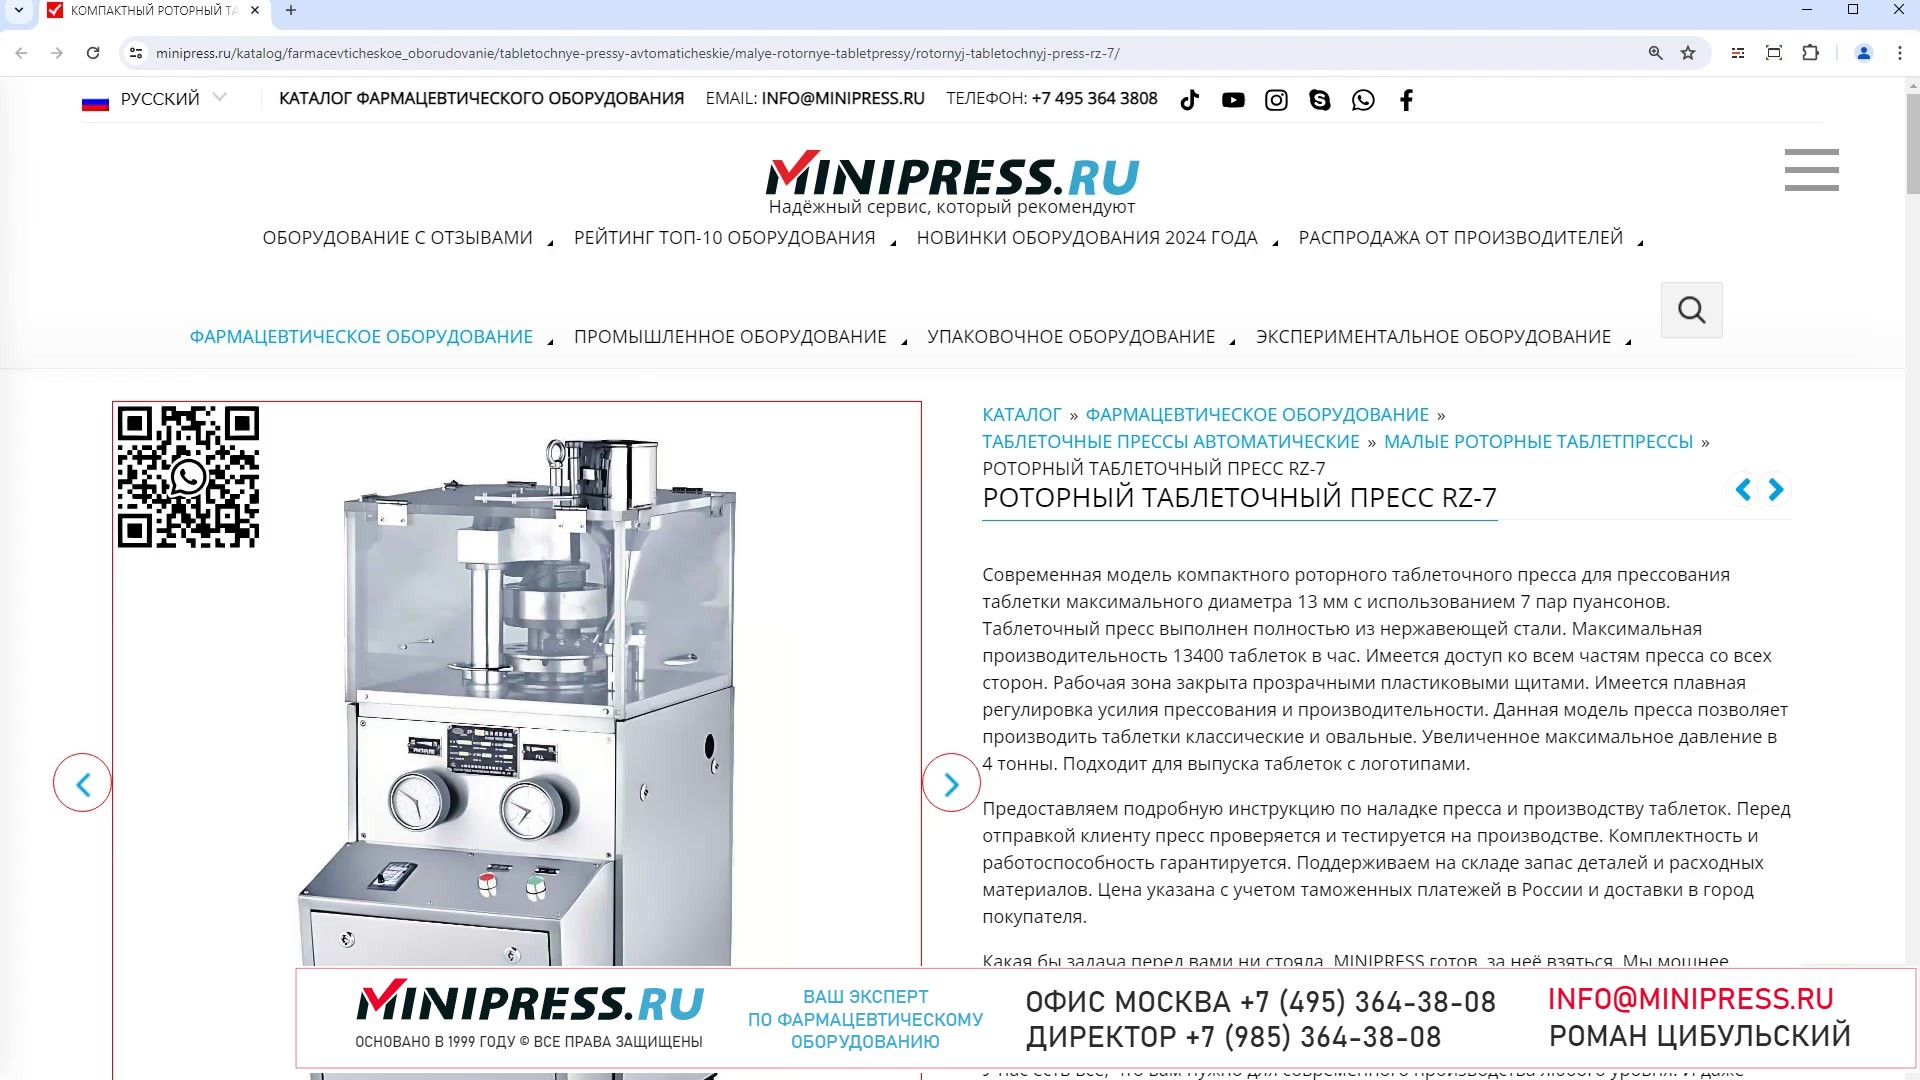 Minipress.ru Роторный таблеточный пресс RZ-7